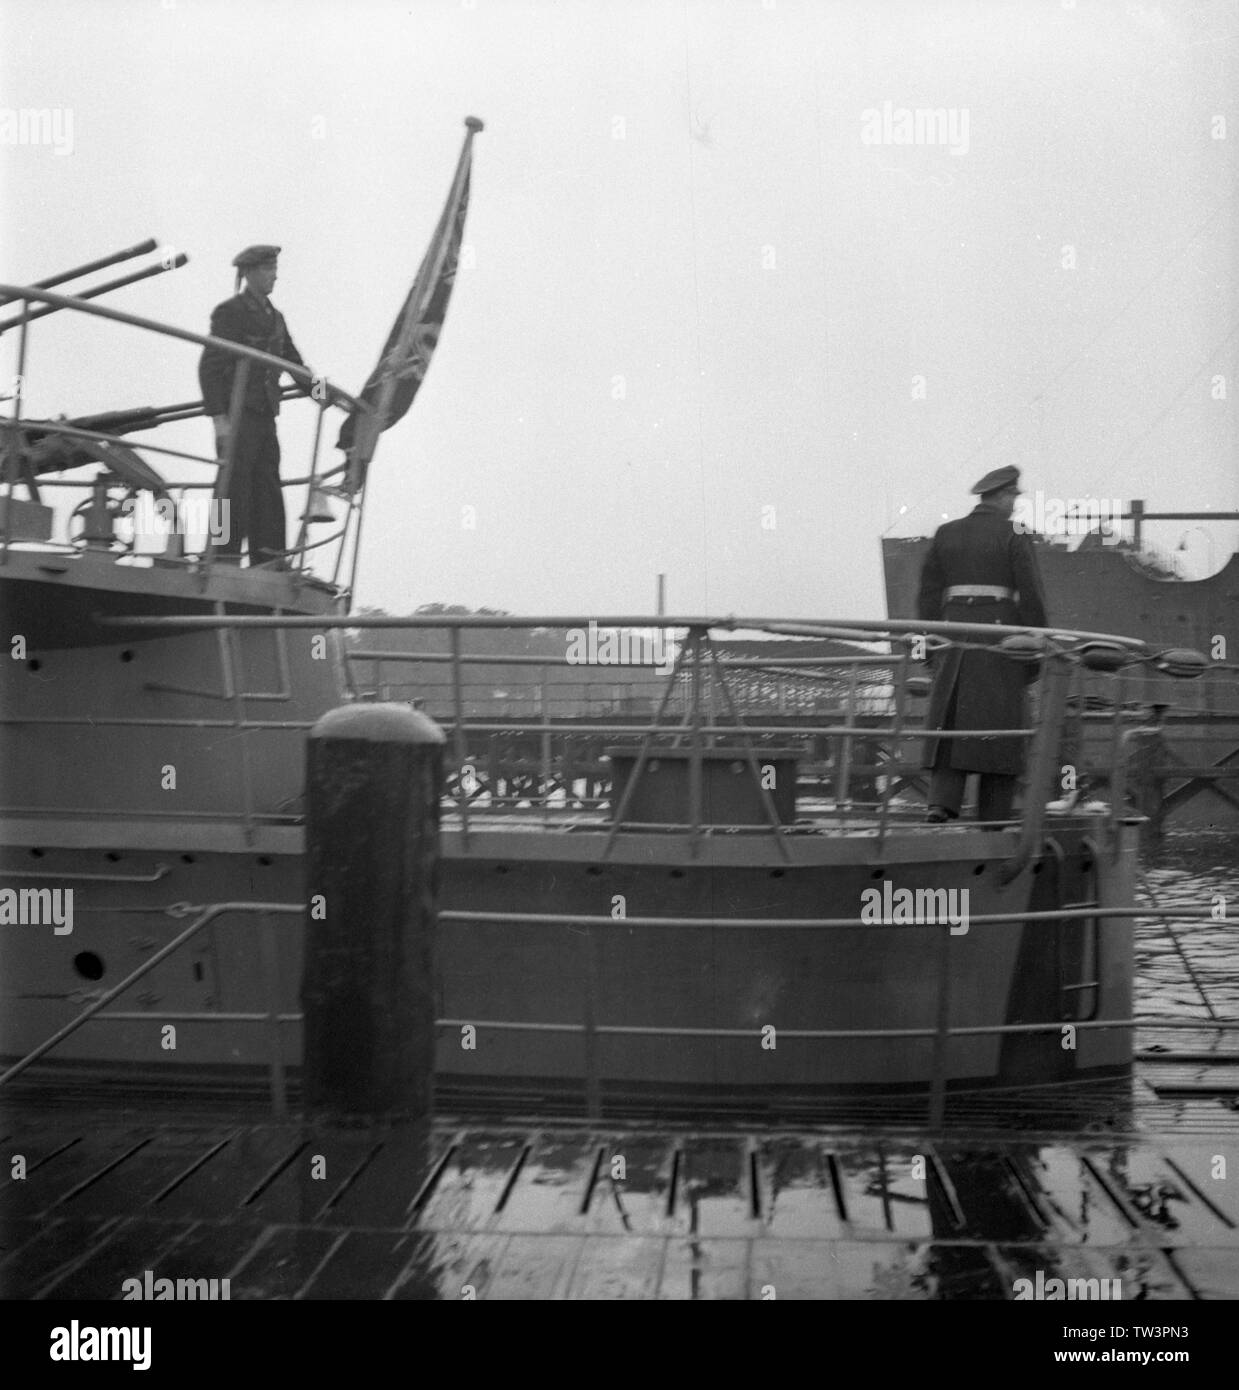 Wehrmacht Kriegsmarine U-Boot des Typs VII C Indienststellung U 1058  1944 - War Navy of Nazi Germany Submarine Type VII C commissioning U1058 1944 Stock Photo